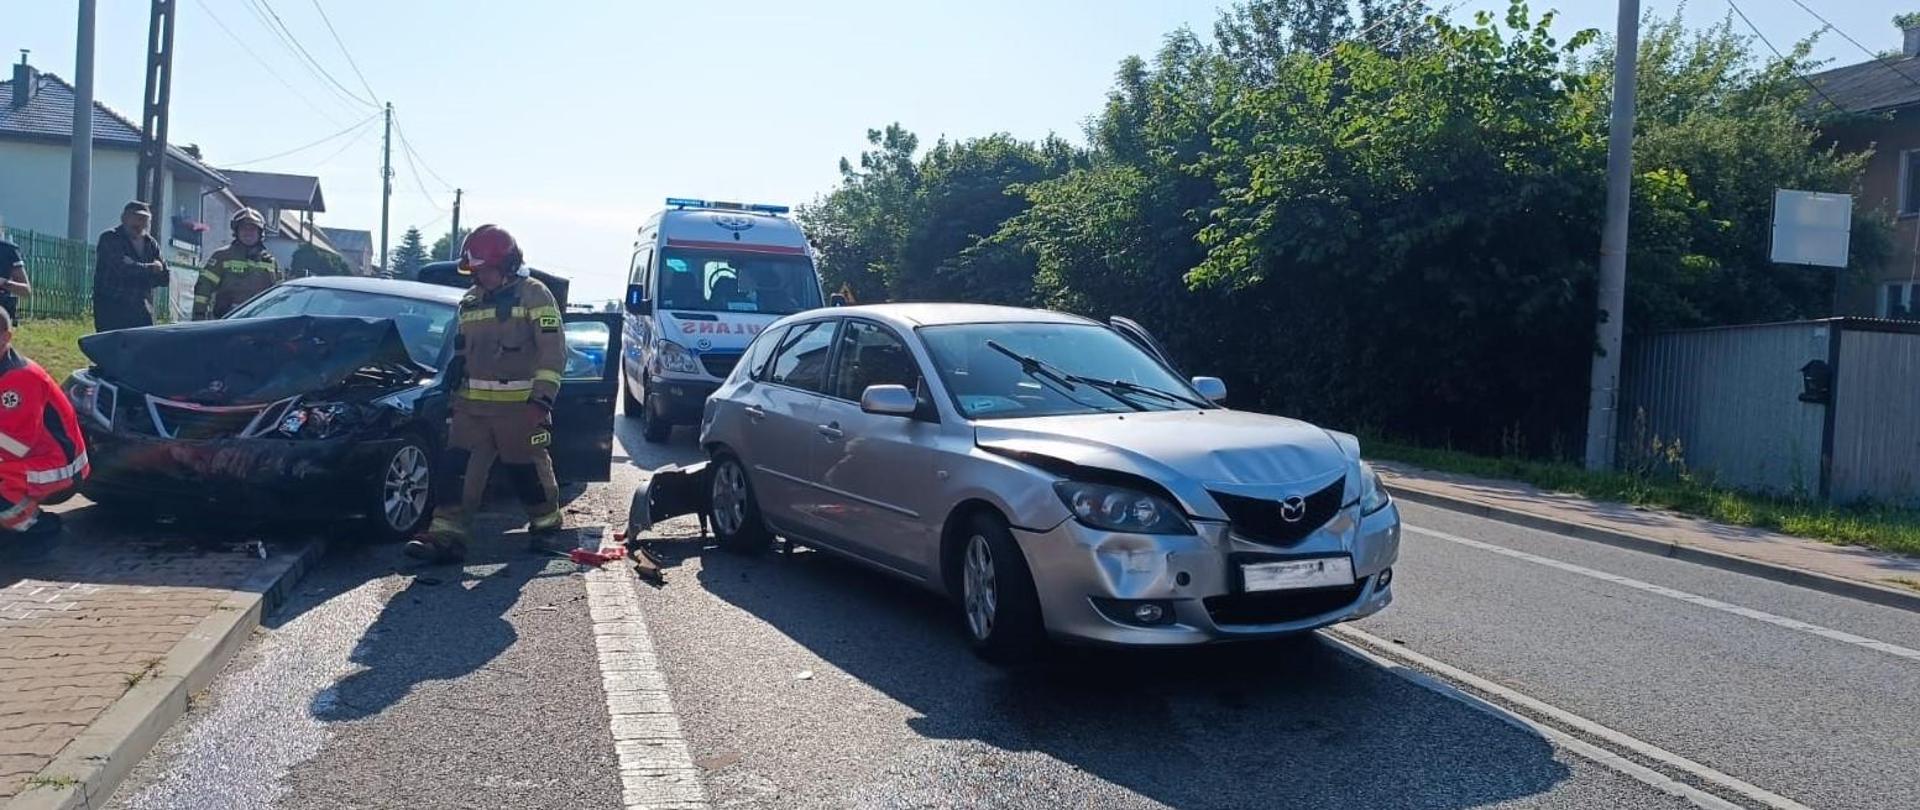 Zdjęcie przedstawia drogę wojewódzką i dwa z trzech aut biorących udział w zderzeniu. Za zniszczonymi autami widać ambulans a między nimi przechodzi strażak.